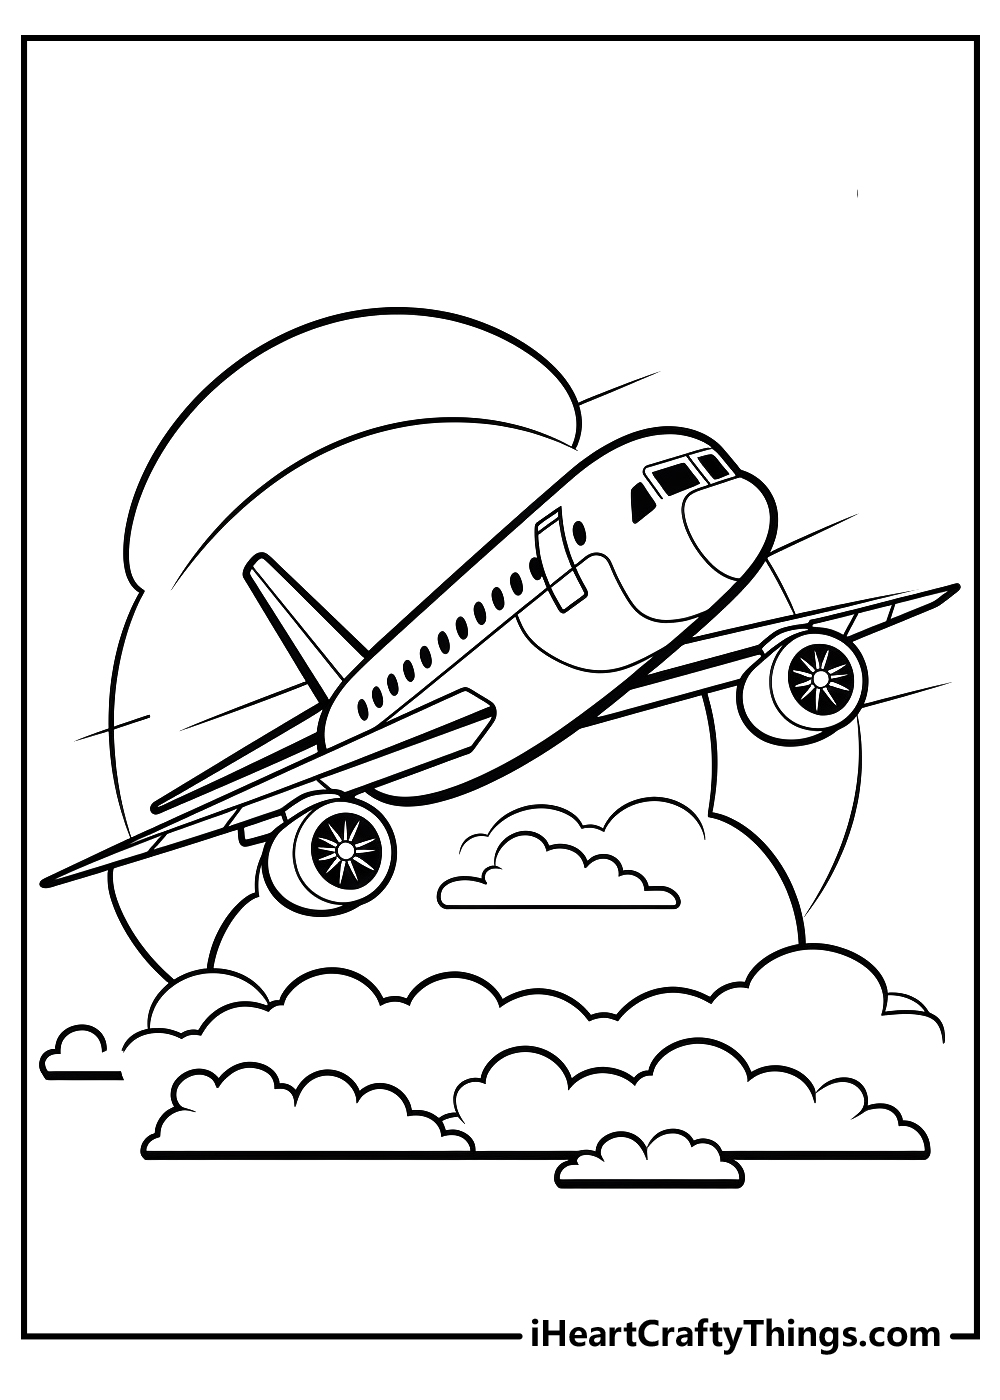 airplane coloring sheet free download